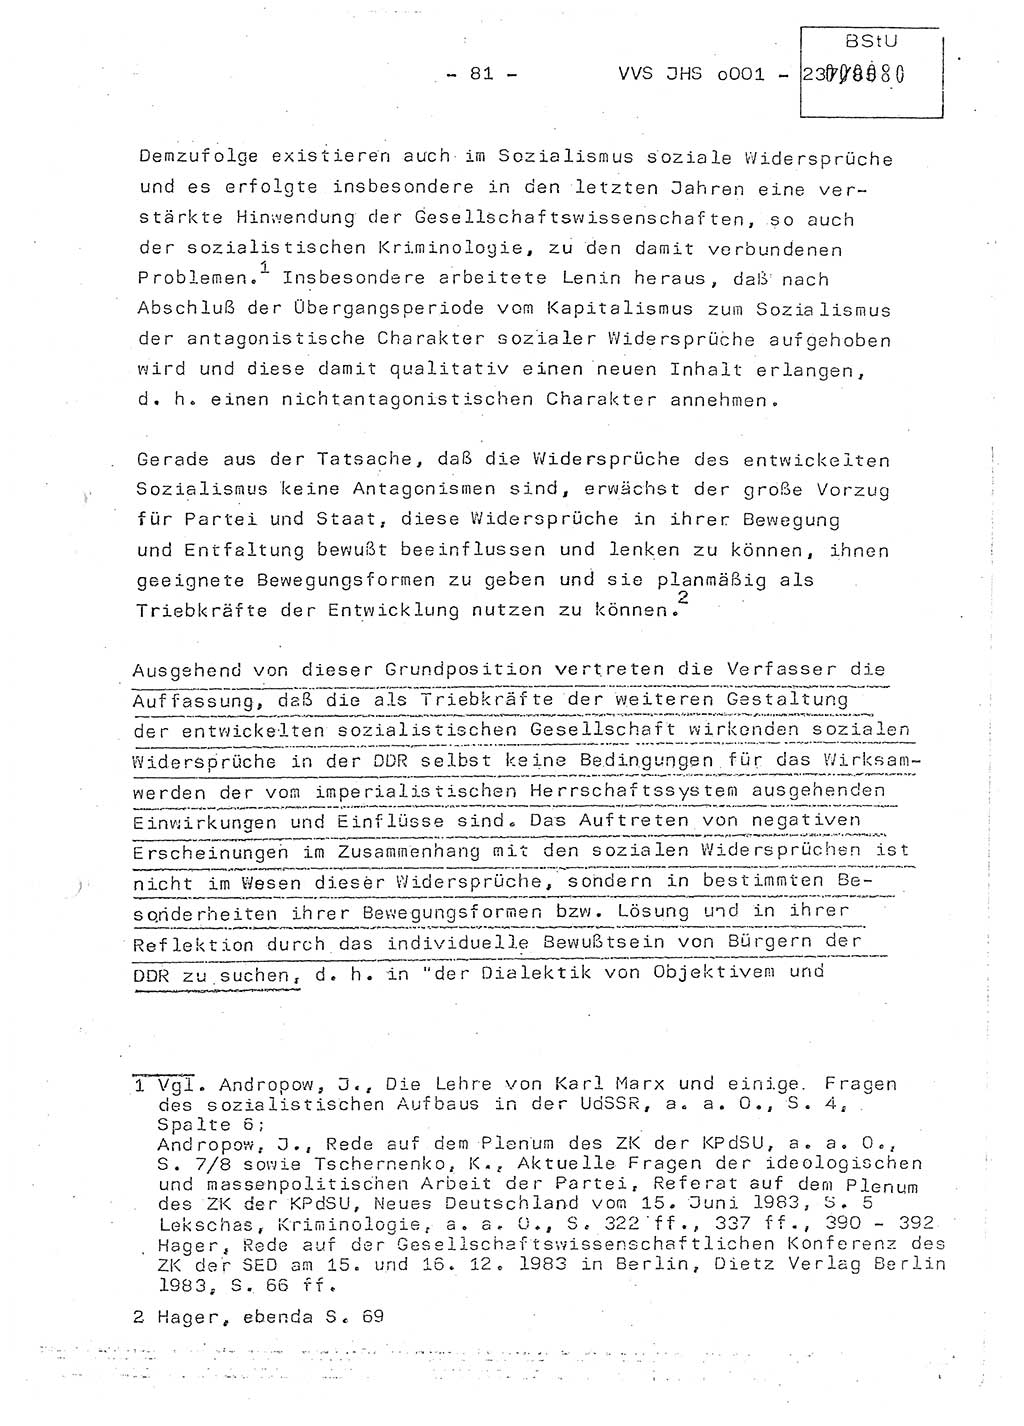 Dissertation Oberstleutnant Peter Jakulski (JHS), Oberstleutnat Christian Rudolph (HA Ⅸ), Major Horst Böttger (ZMD), Major Wolfgang Grüneberg (JHS), Major Albert Meutsch (JHS), Ministerium für Staatssicherheit (MfS) [Deutsche Demokratische Republik (DDR)], Juristische Hochschule (JHS), Vertrauliche Verschlußsache (VVS) o001-237/85, Potsdam 1985, Seite 81 (Diss. MfS DDR JHS VVS o001-237/85 1985, S. 81)